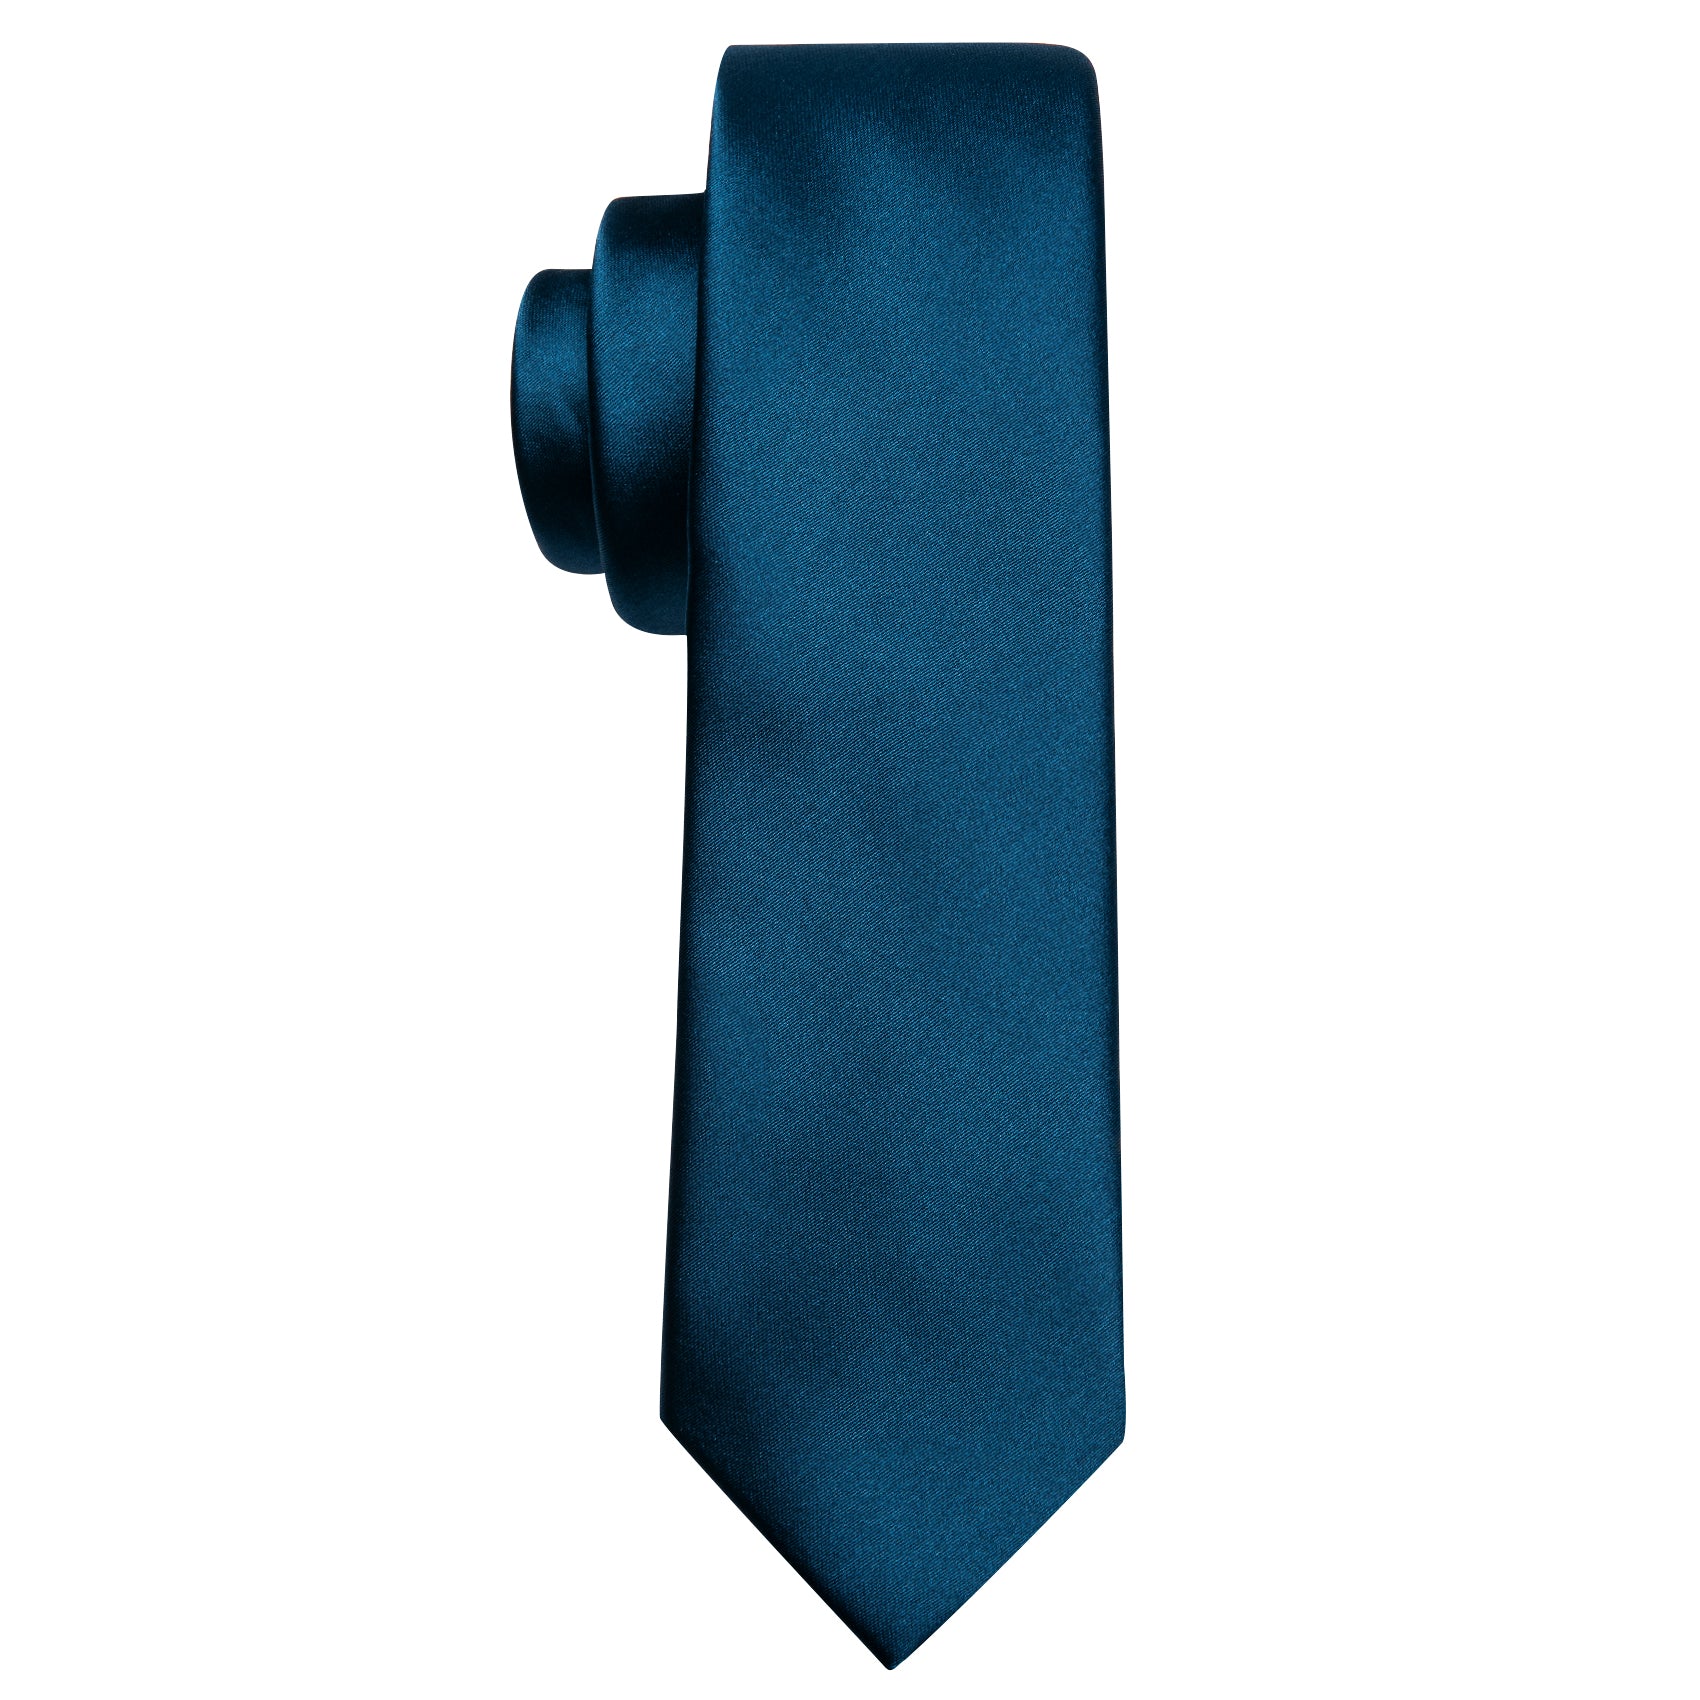 Oriental Blue Solid Tie Pocket Square Set For Kids